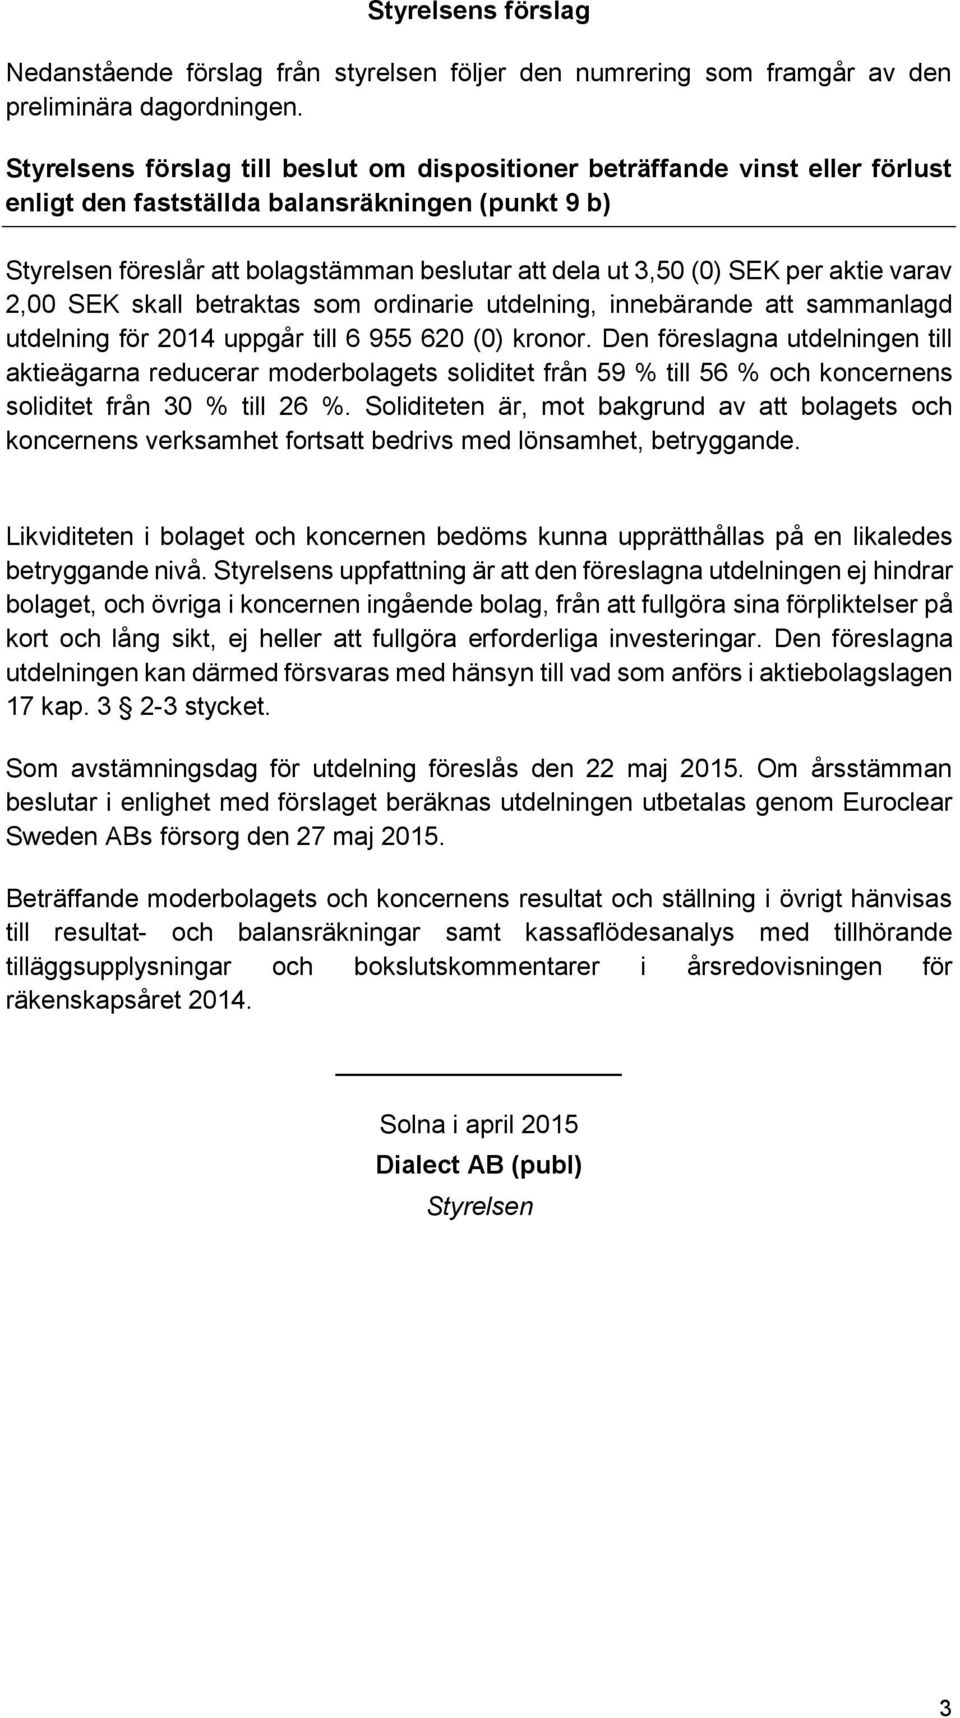 2,00 SEK skall betraktas som ordinarie utdelning, innebärande att sammanlagd utdelning för 2014 uppgår till 6 955 620 (0) kronor.